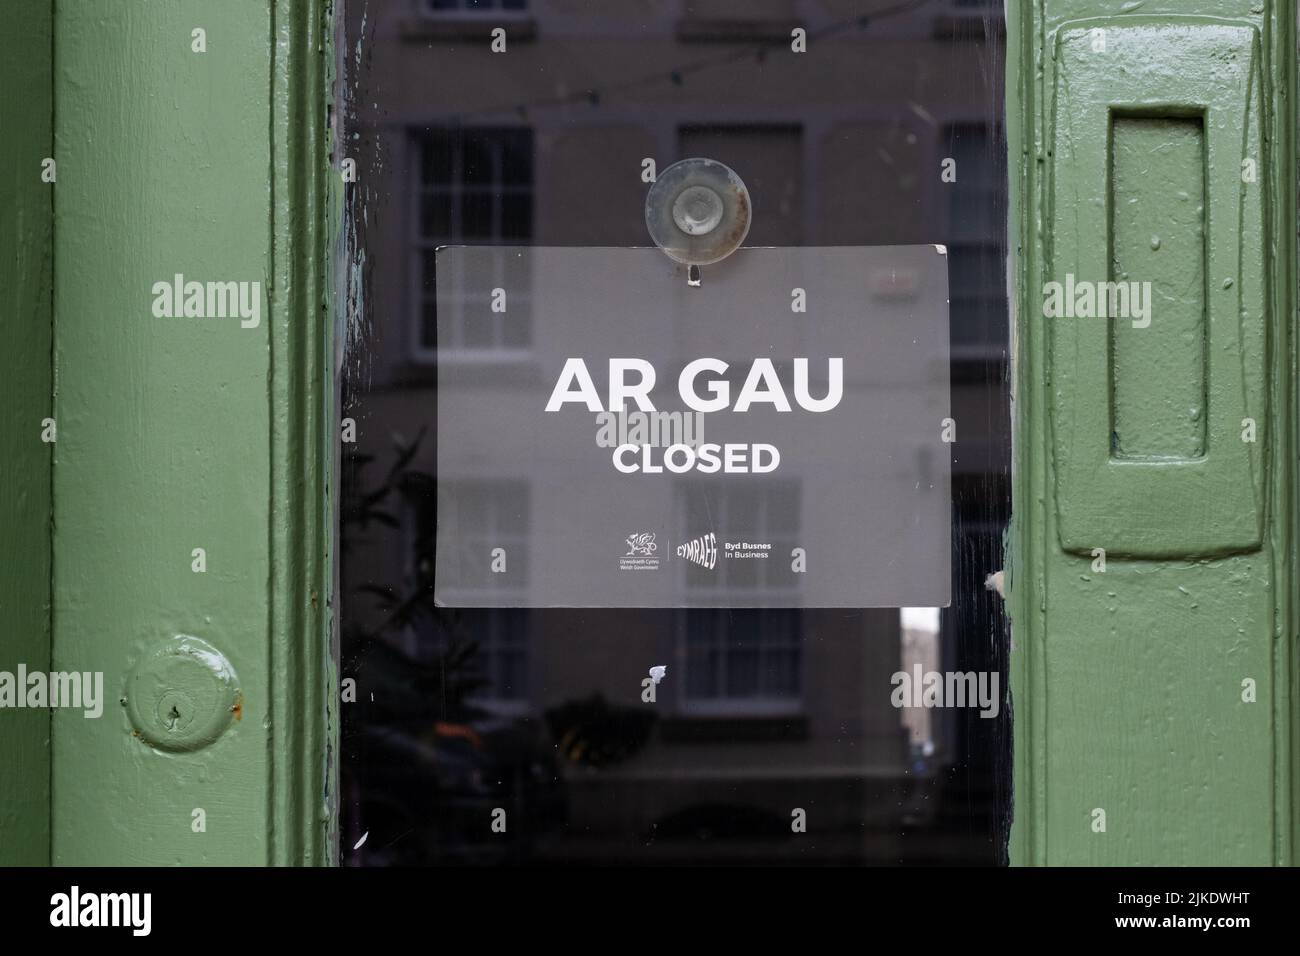 Panneau de magasin de langue galloise - AR Gau - fermé - Beaumaris, Anglesey, pays de Galles Banque D'Images